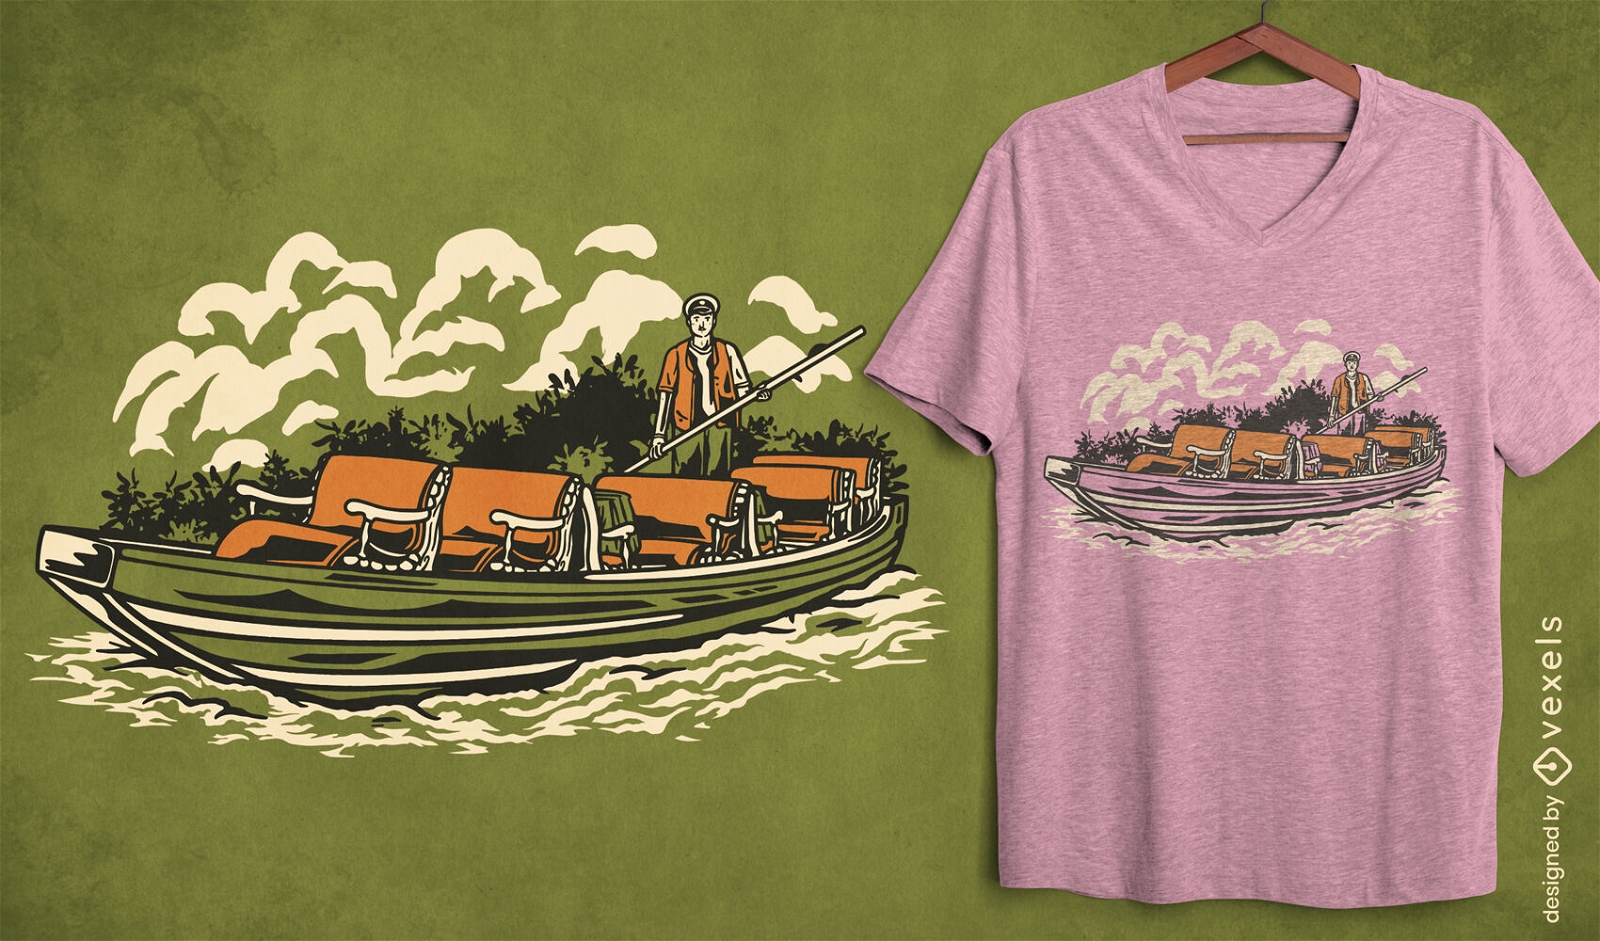 German boat on river t-shirt design